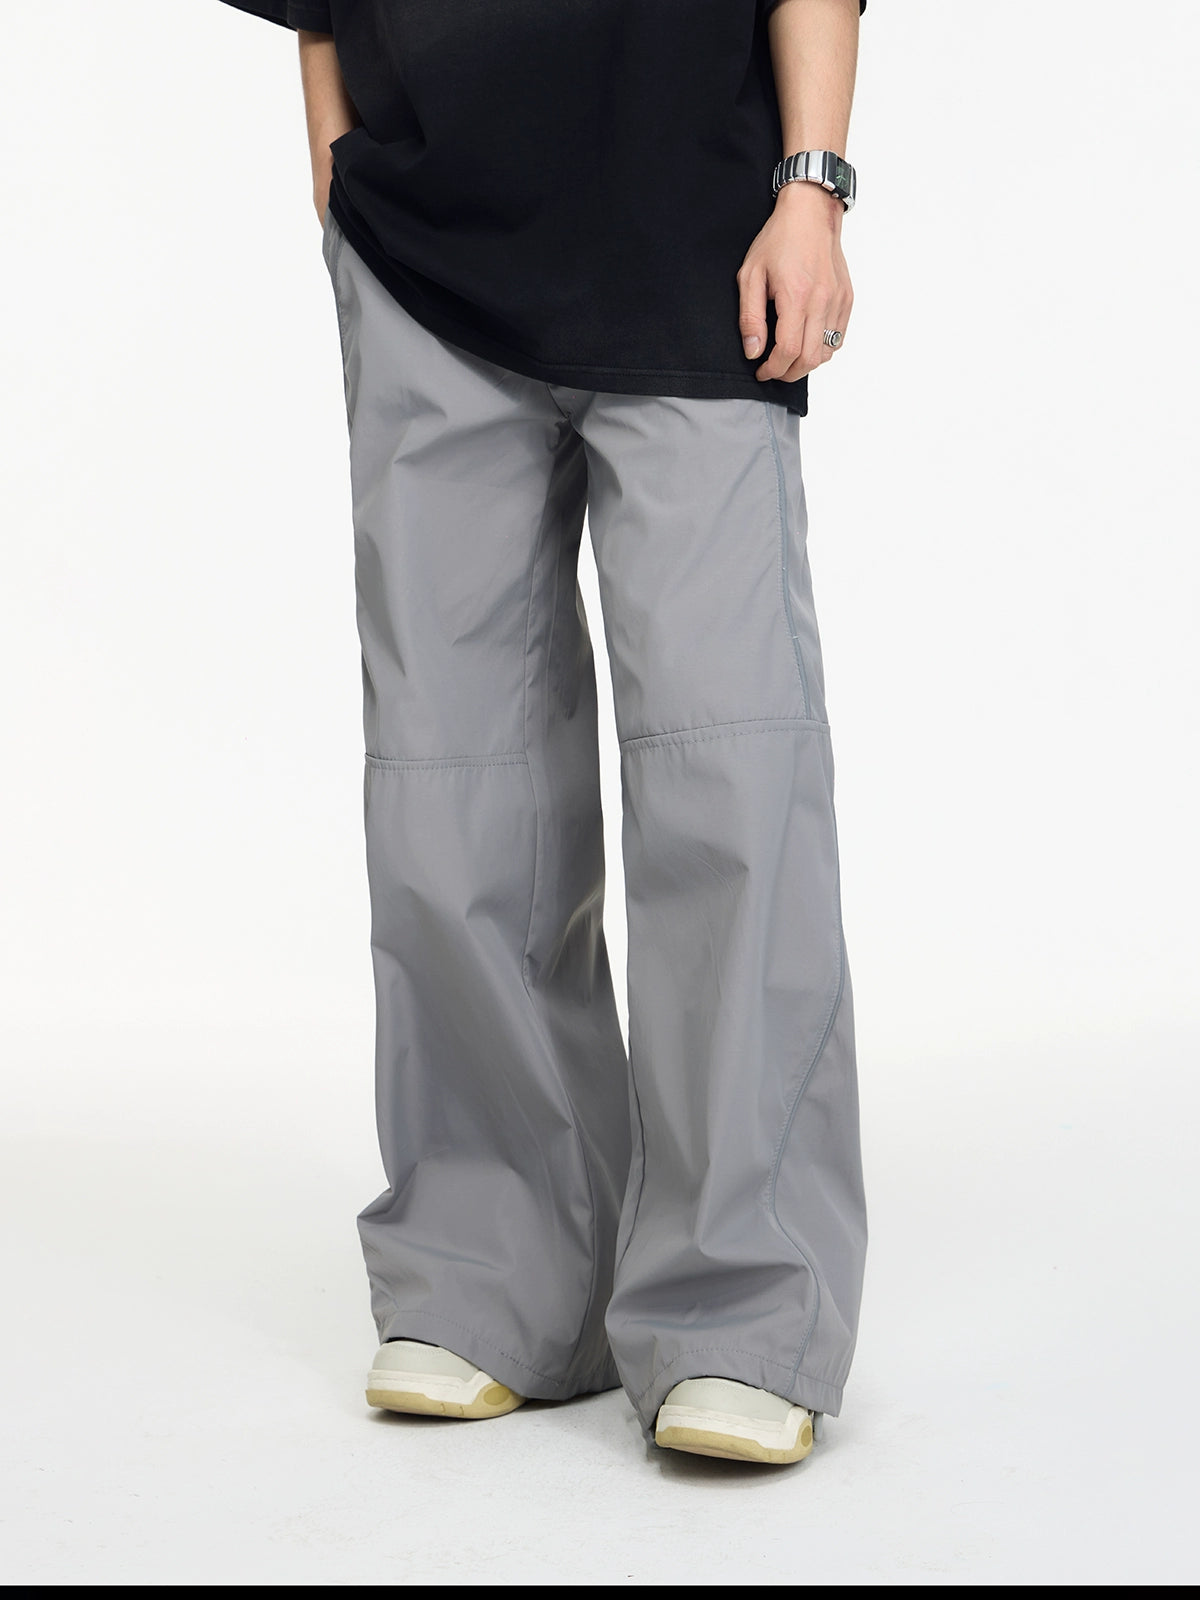 Nylon à rayures réfléchissantes - Pantalon sportif rétro-bella